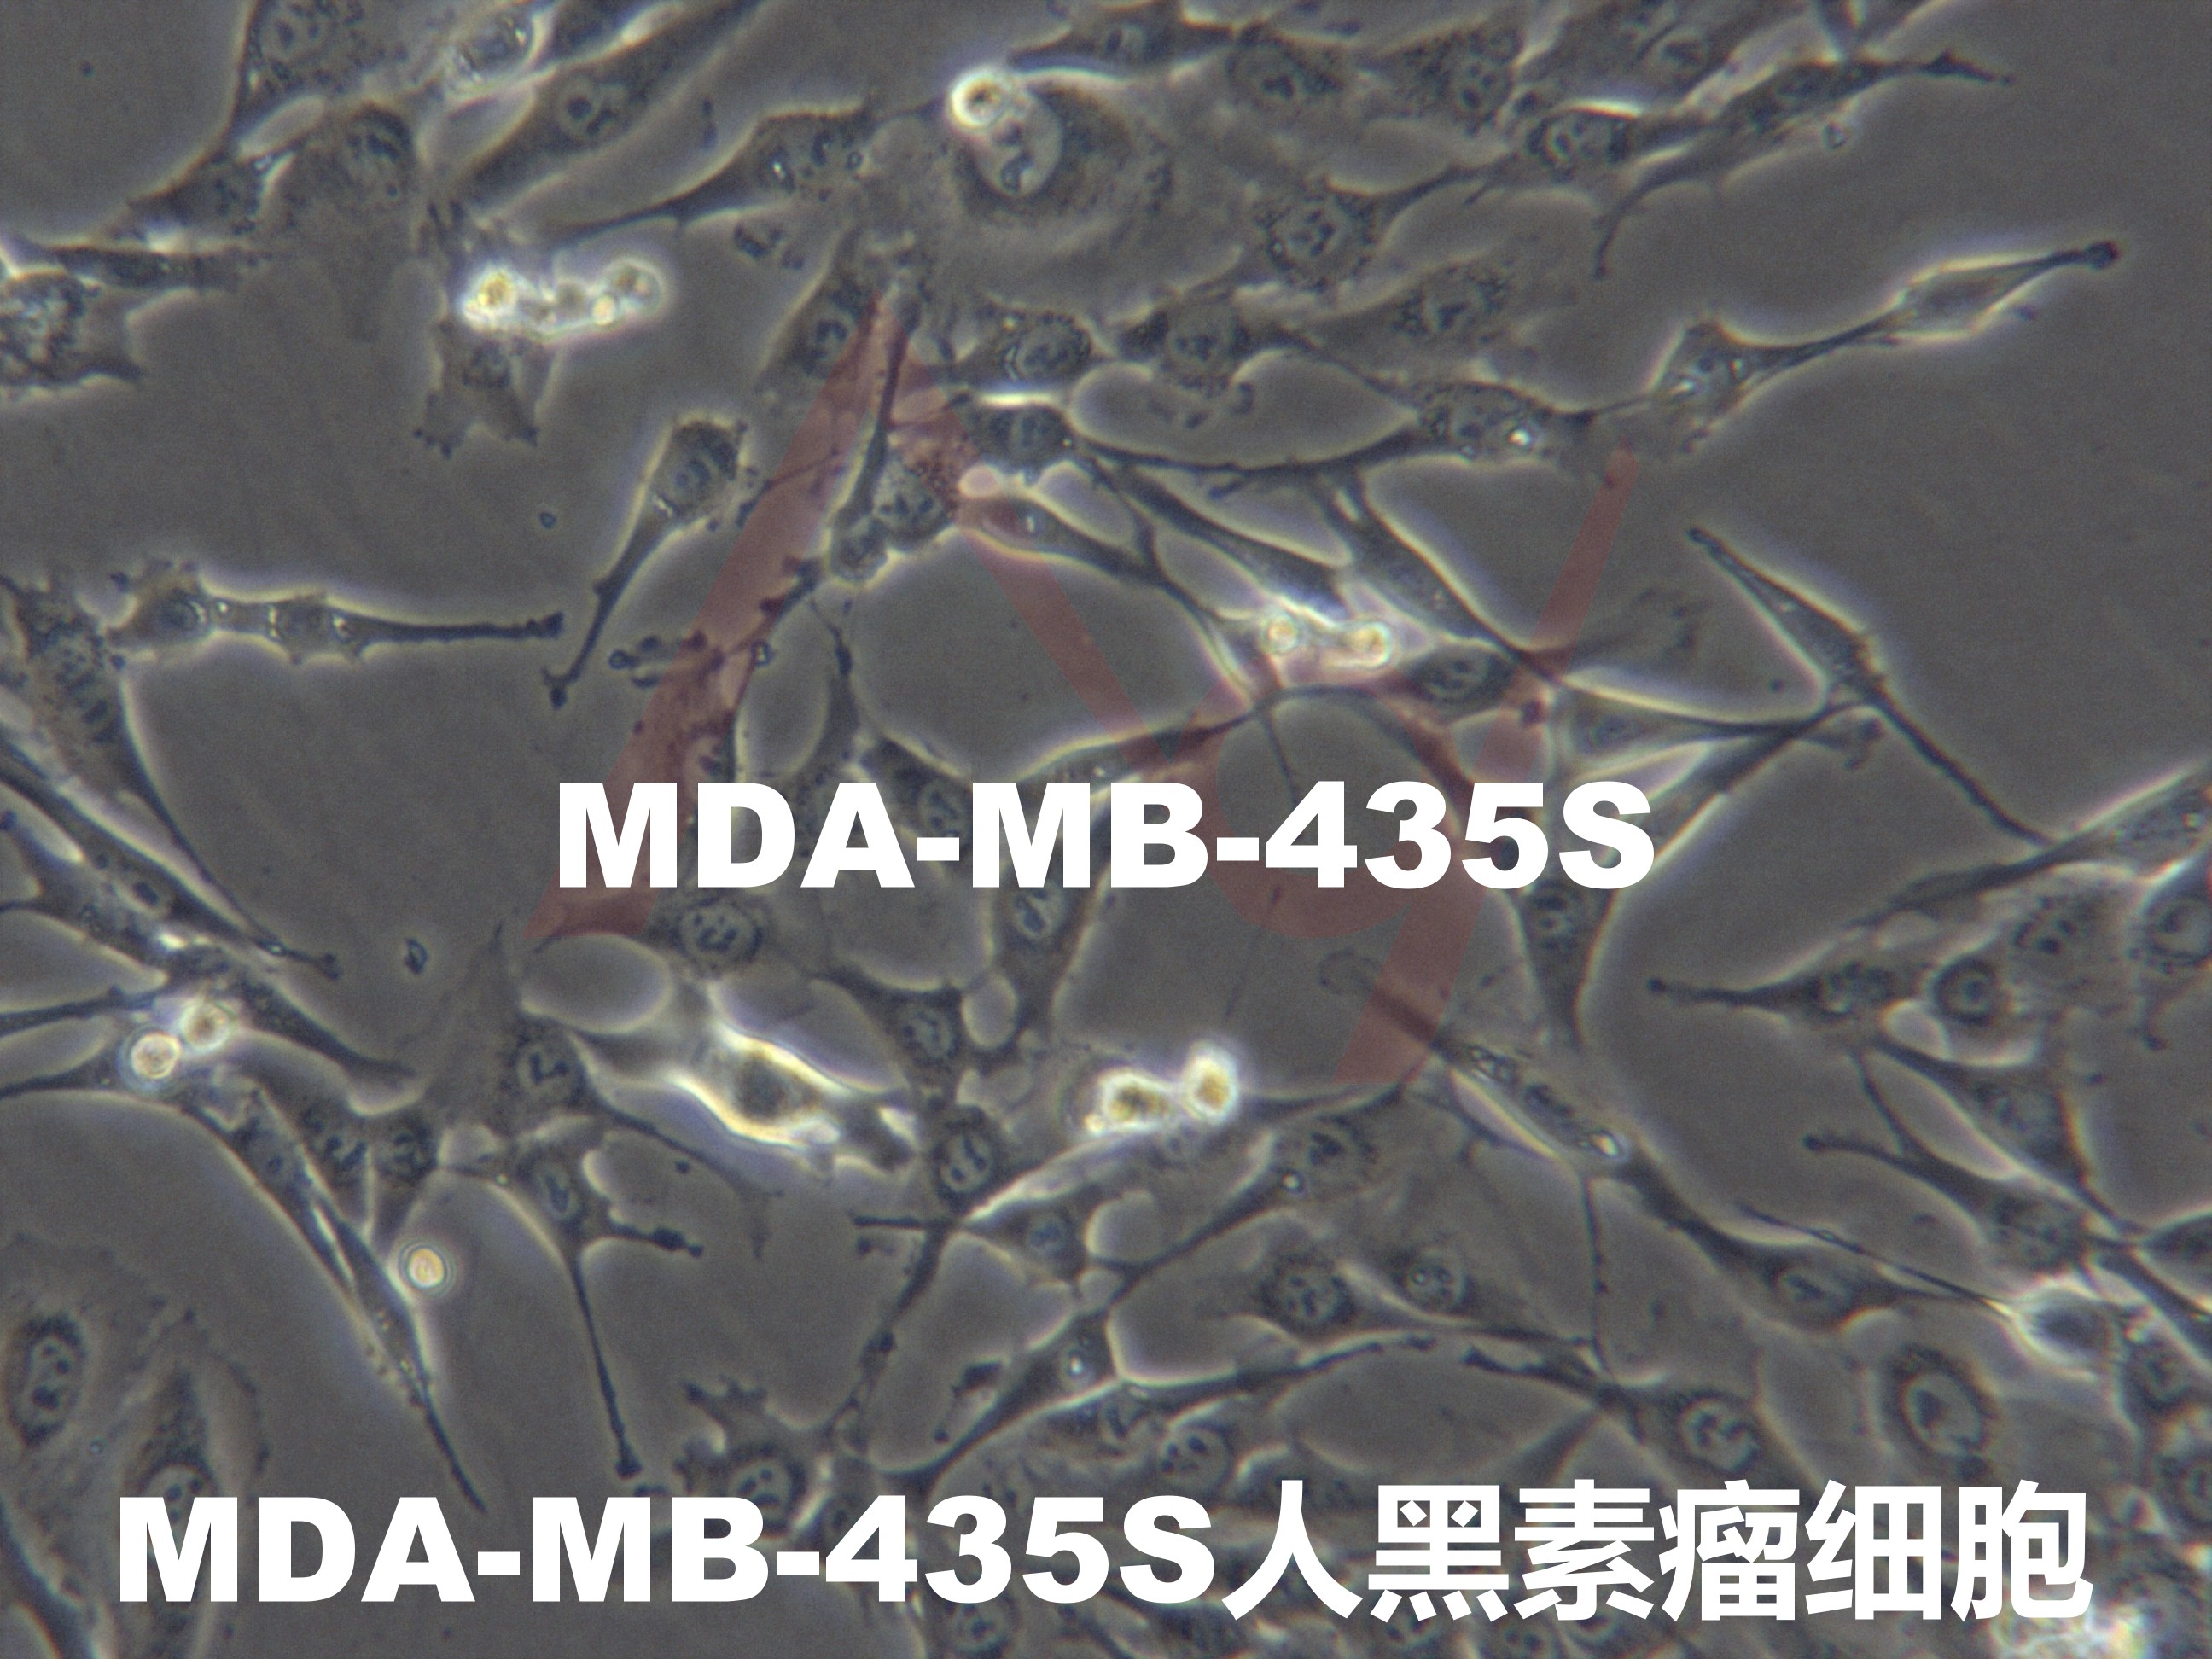 MDA-MB-435S[MDA-MB-435s; MDA-MB-435 S; MDA-MB-435-S; MDAMB435S; BrCL15]黑素瘤细胞